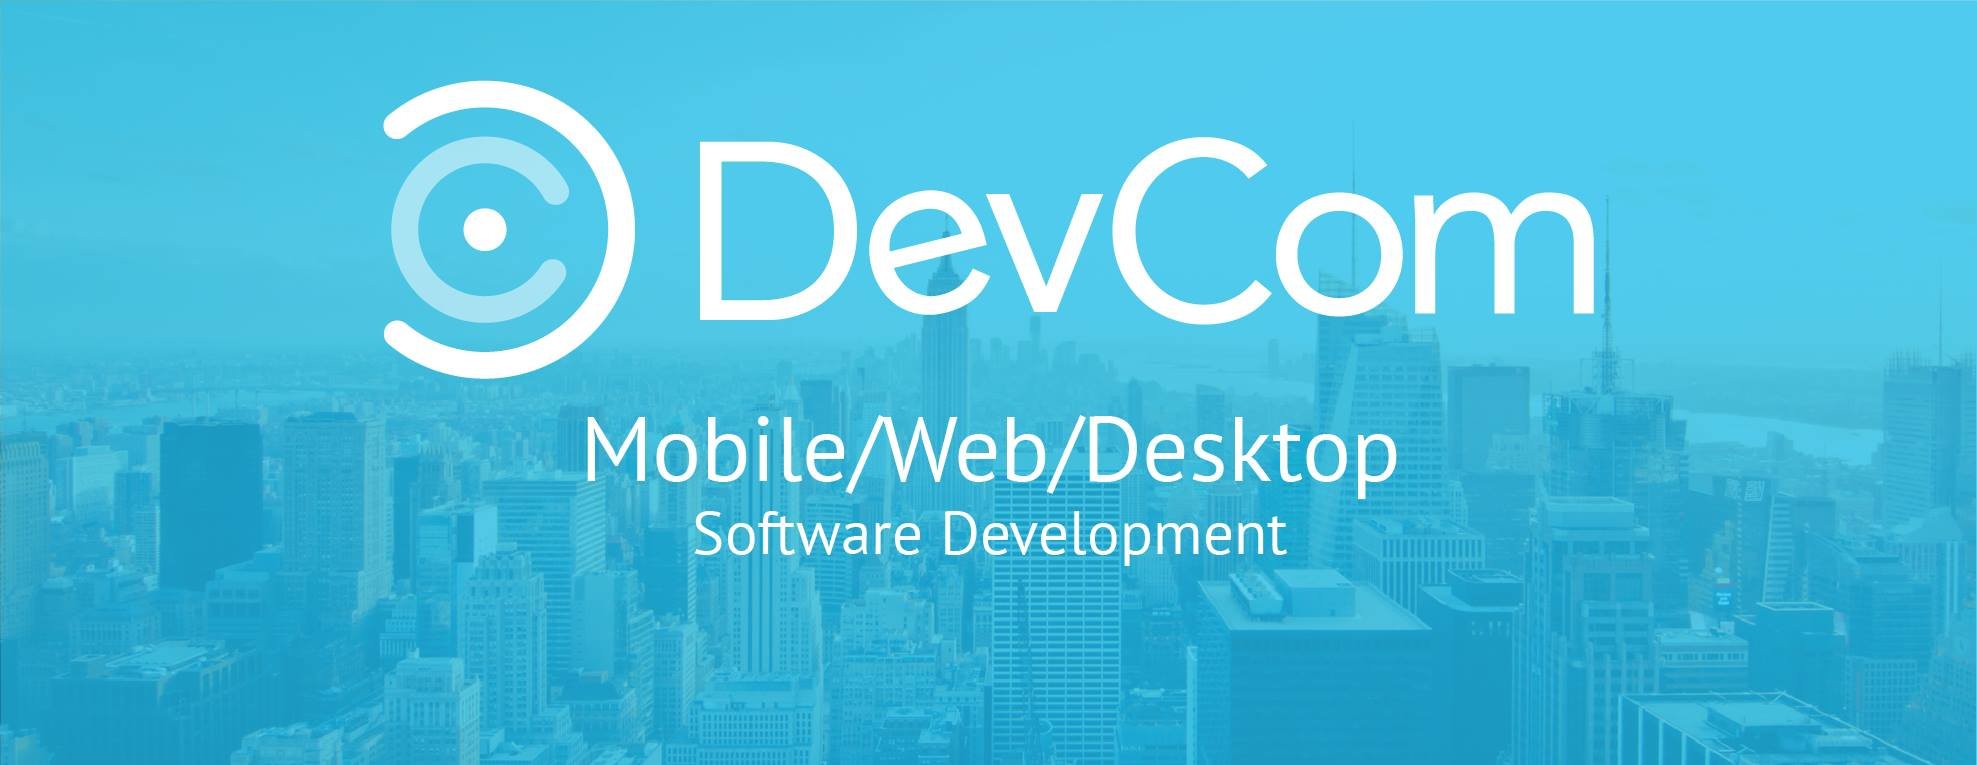 DevCom cover